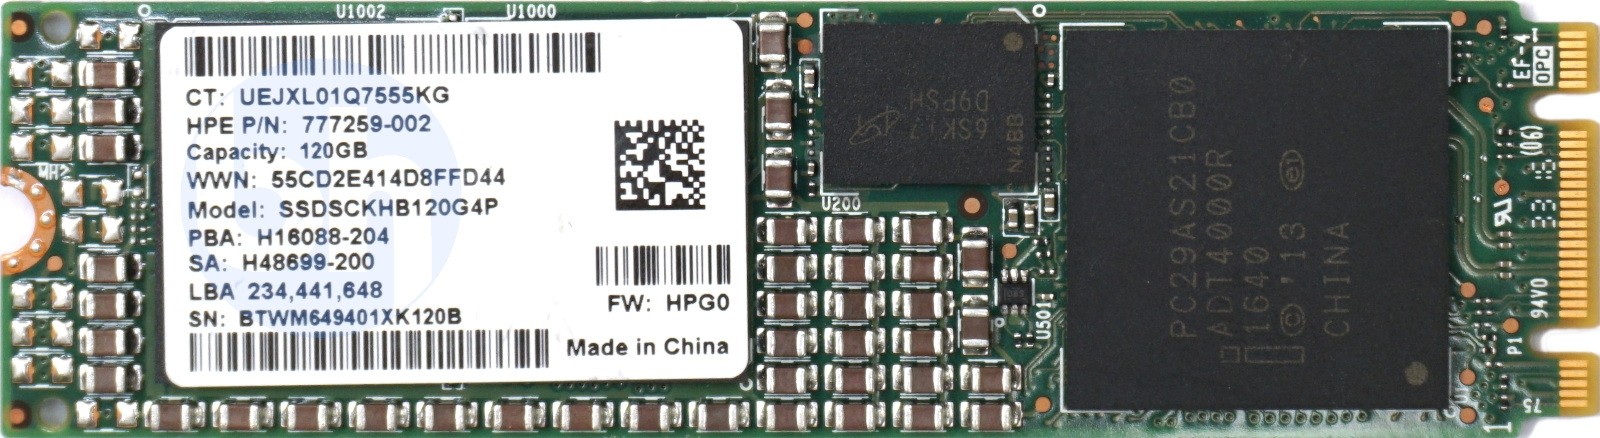 HP (777259-002) 120GB SATA (M.2 2280) Enterprise SSD